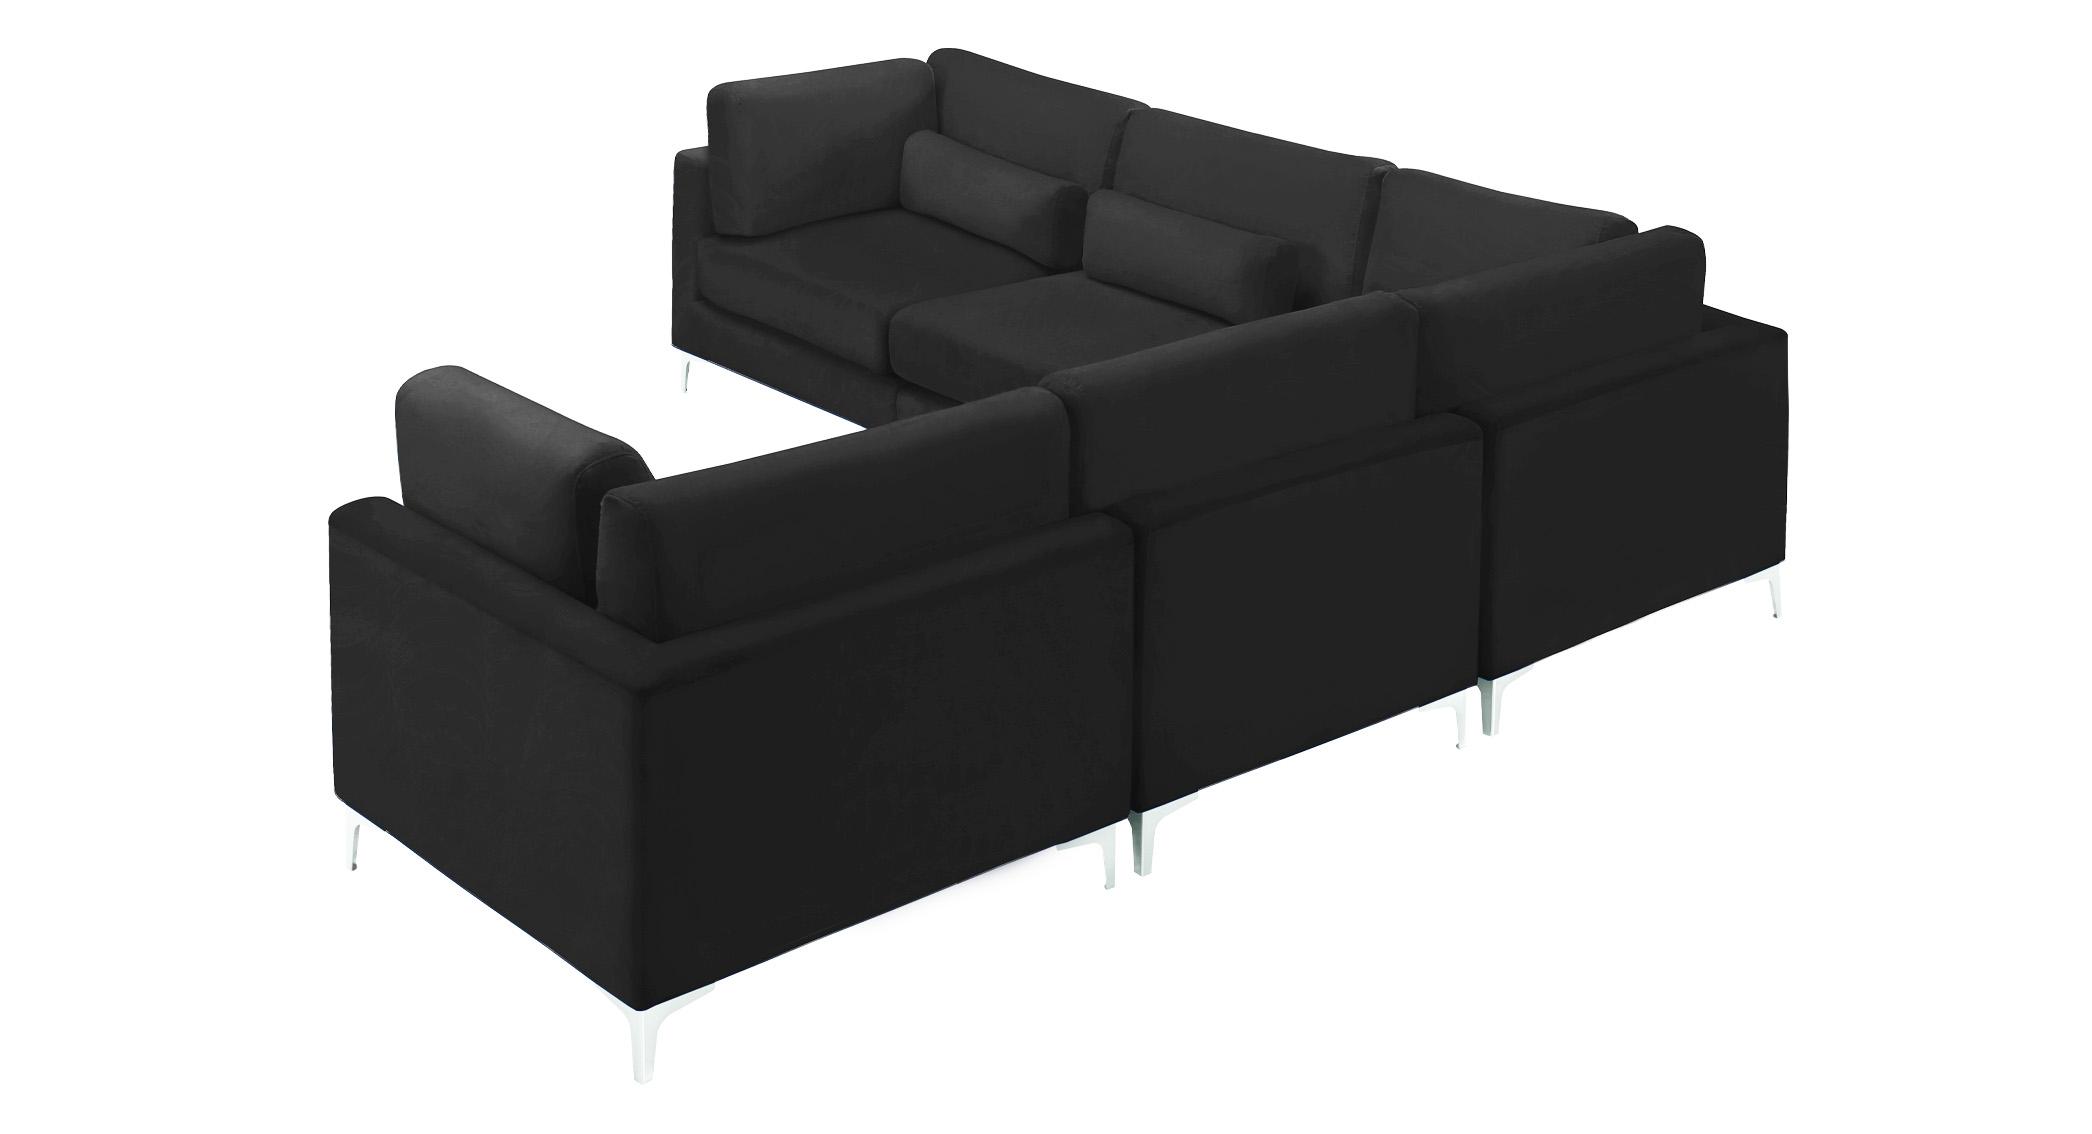 

    
Meridian Furniture JULIA 605Black-Sec5C Modular Sectional Sofa Black 605Black-Sec5C
